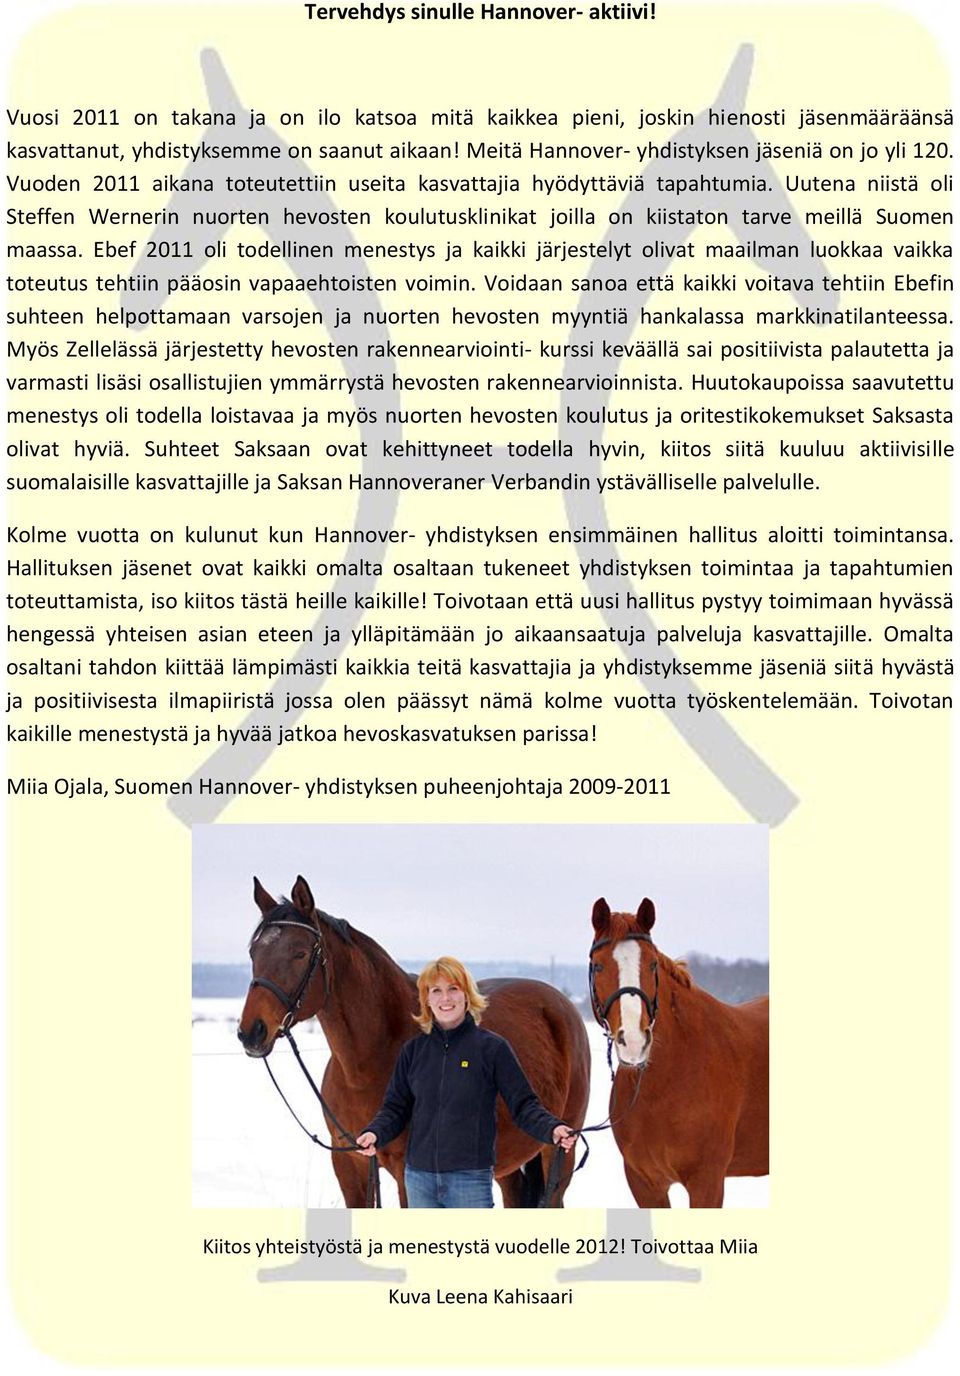 Uutena niistä oli Steffen Wernerin nuorten hevosten koulutusklinikat joilla on kiistaton tarve meillä Suomen maassa.